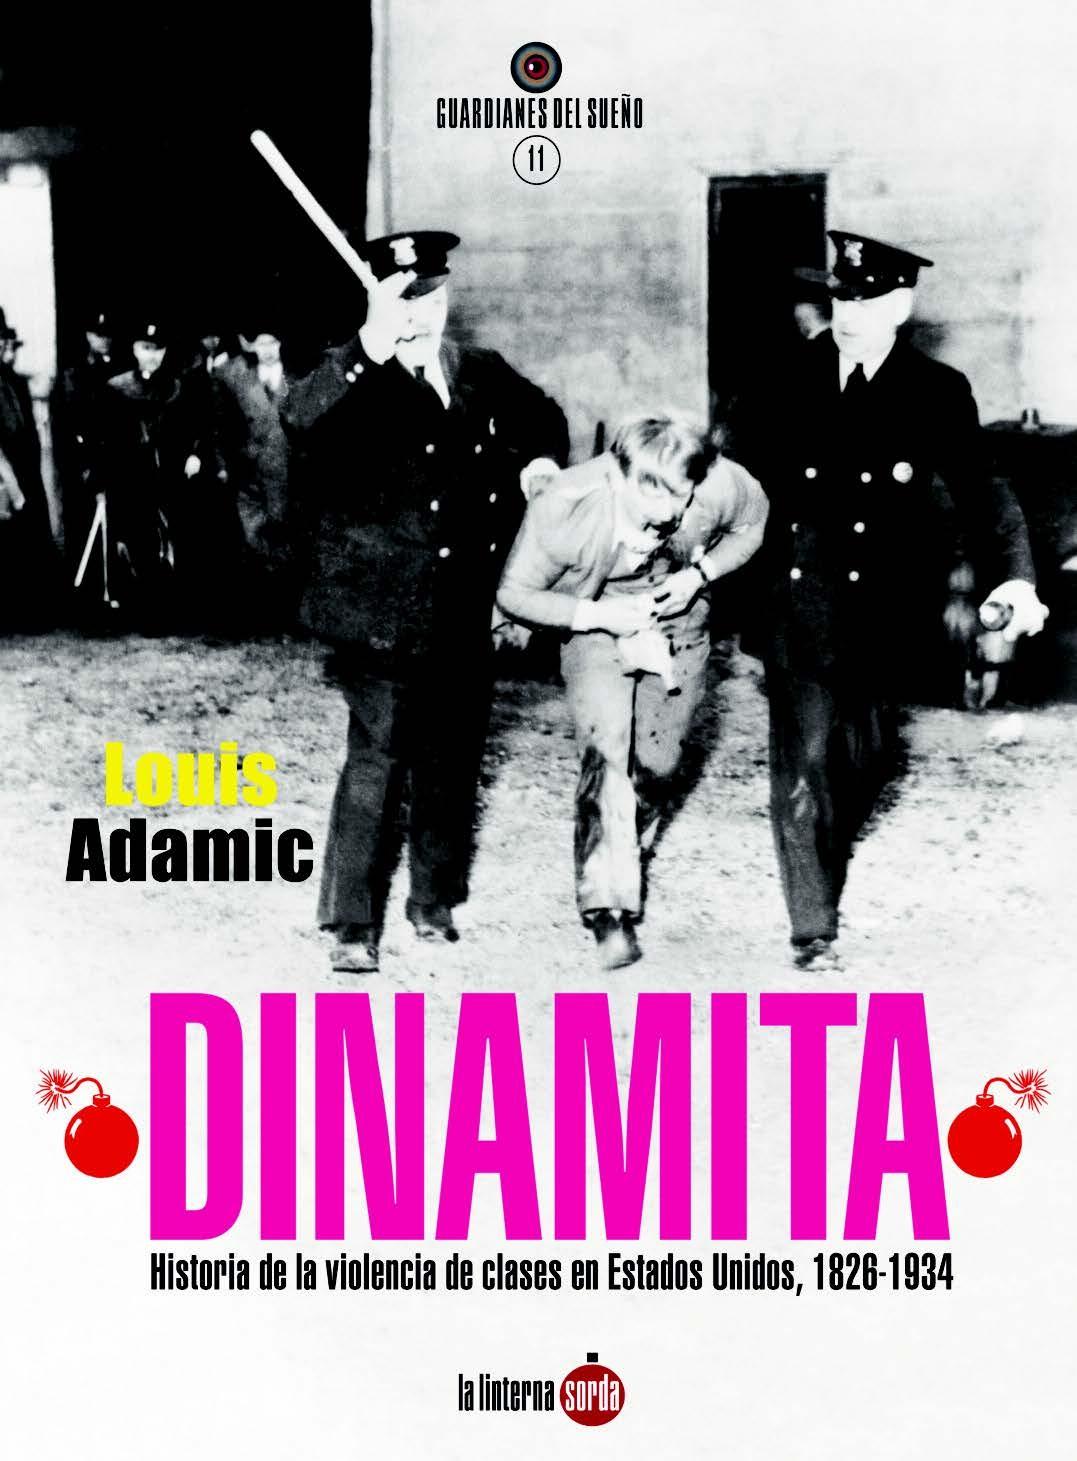 Dinamita "Historia de la violencia de clases en Estados Unidos, 1826-1934"